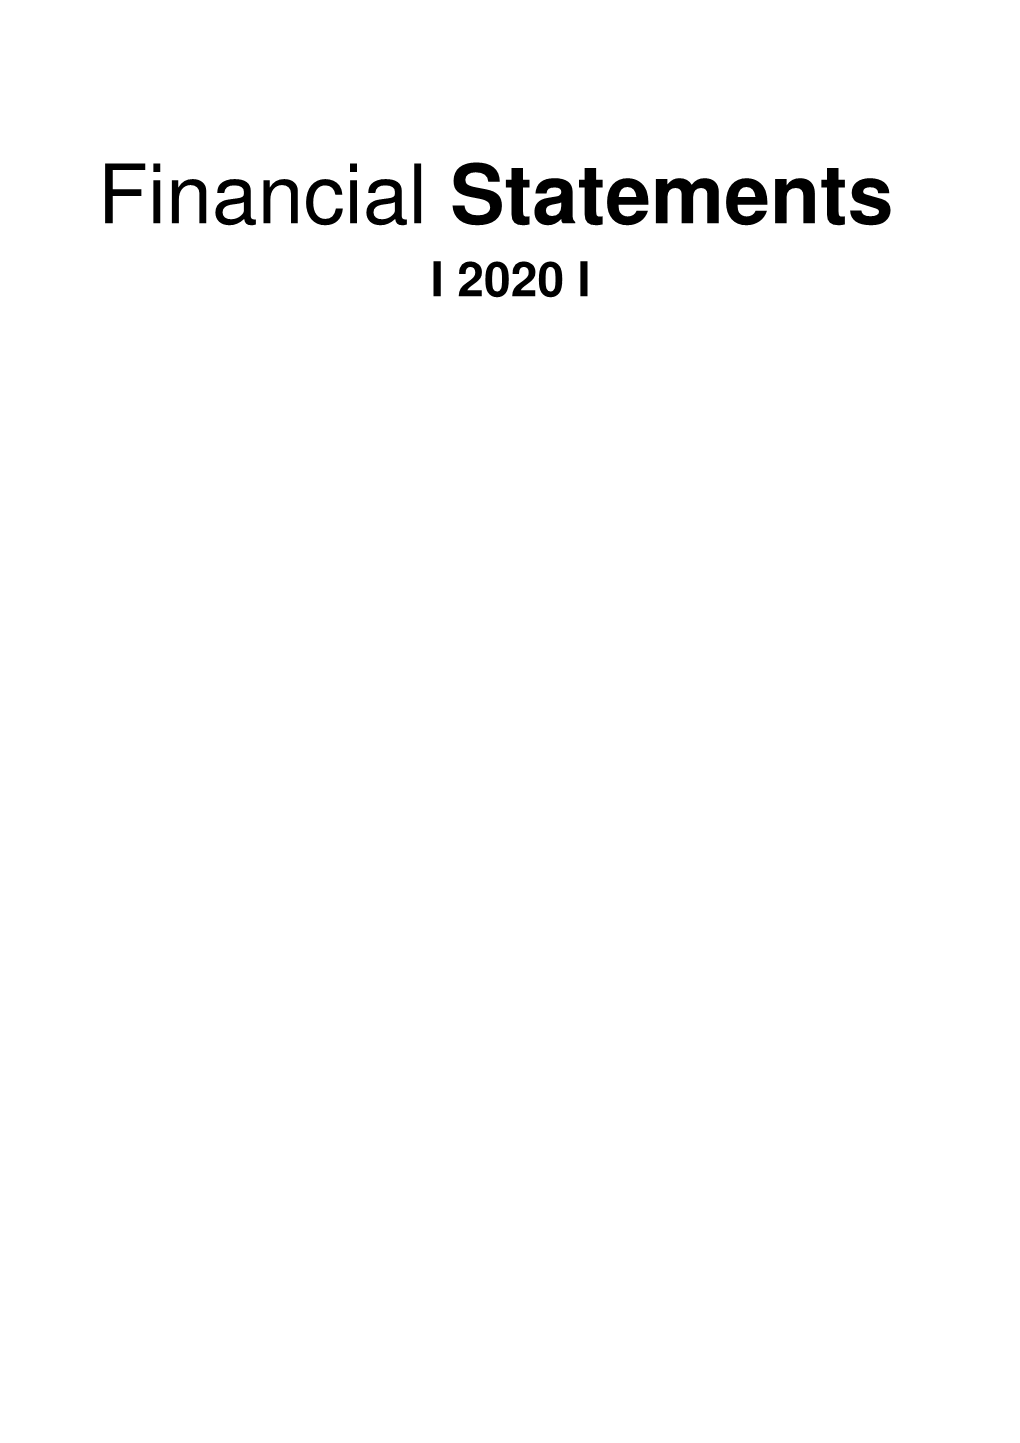 Financial Statements I 2020 I Financial Statements